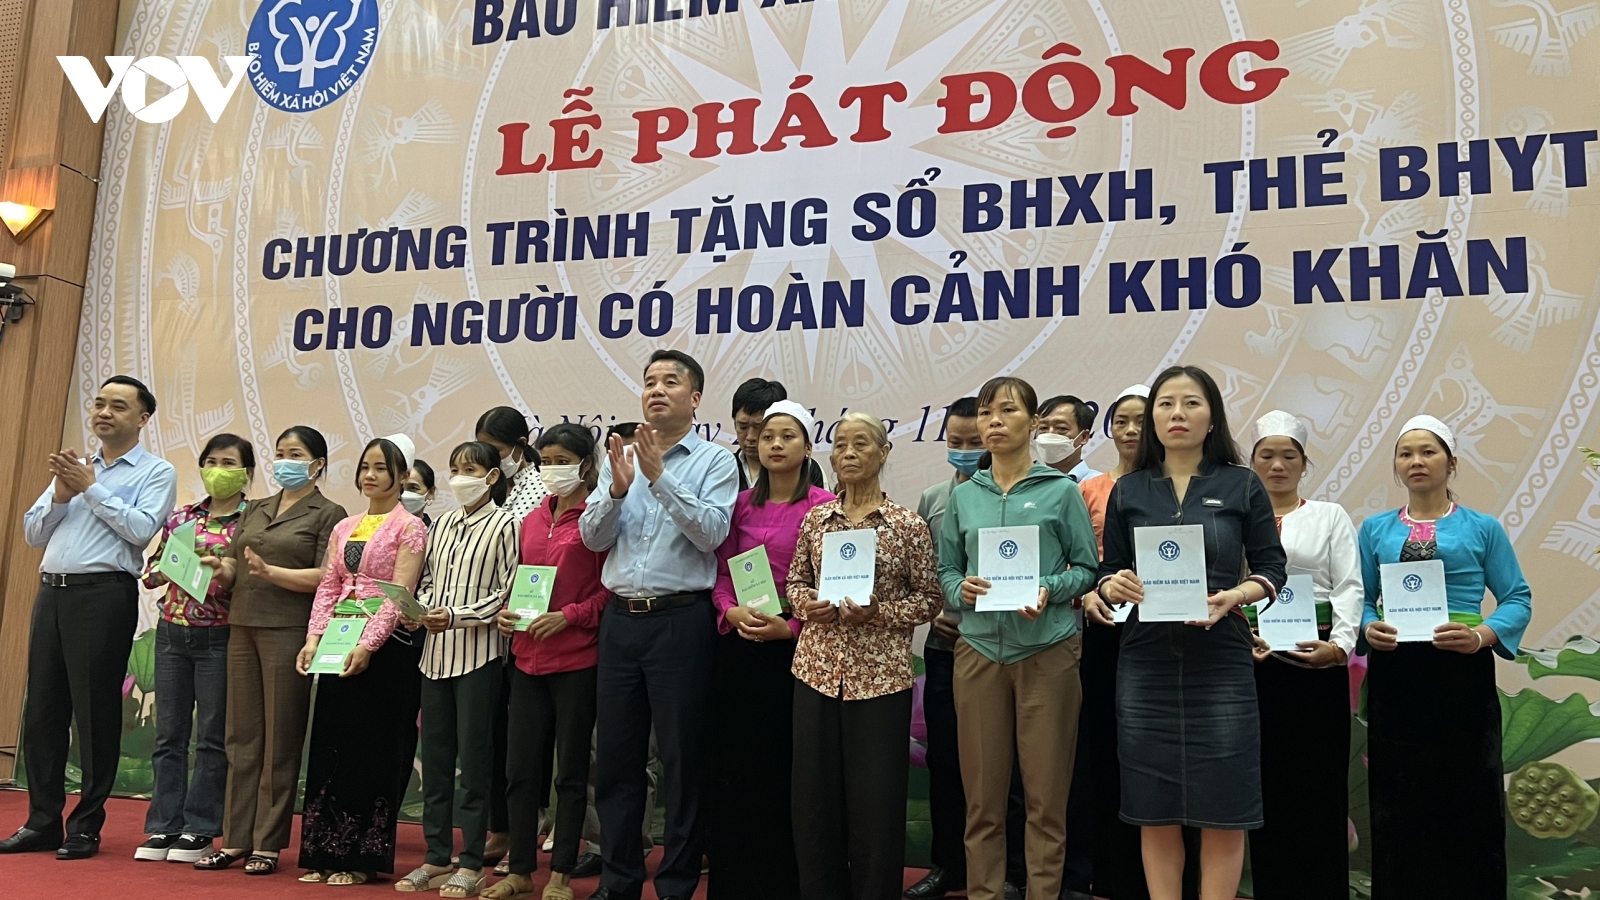 BHXH Việt Nam phát động tặng sổ BHXH, thẻ BHYT cho người có hoàn cảnh khó khăn